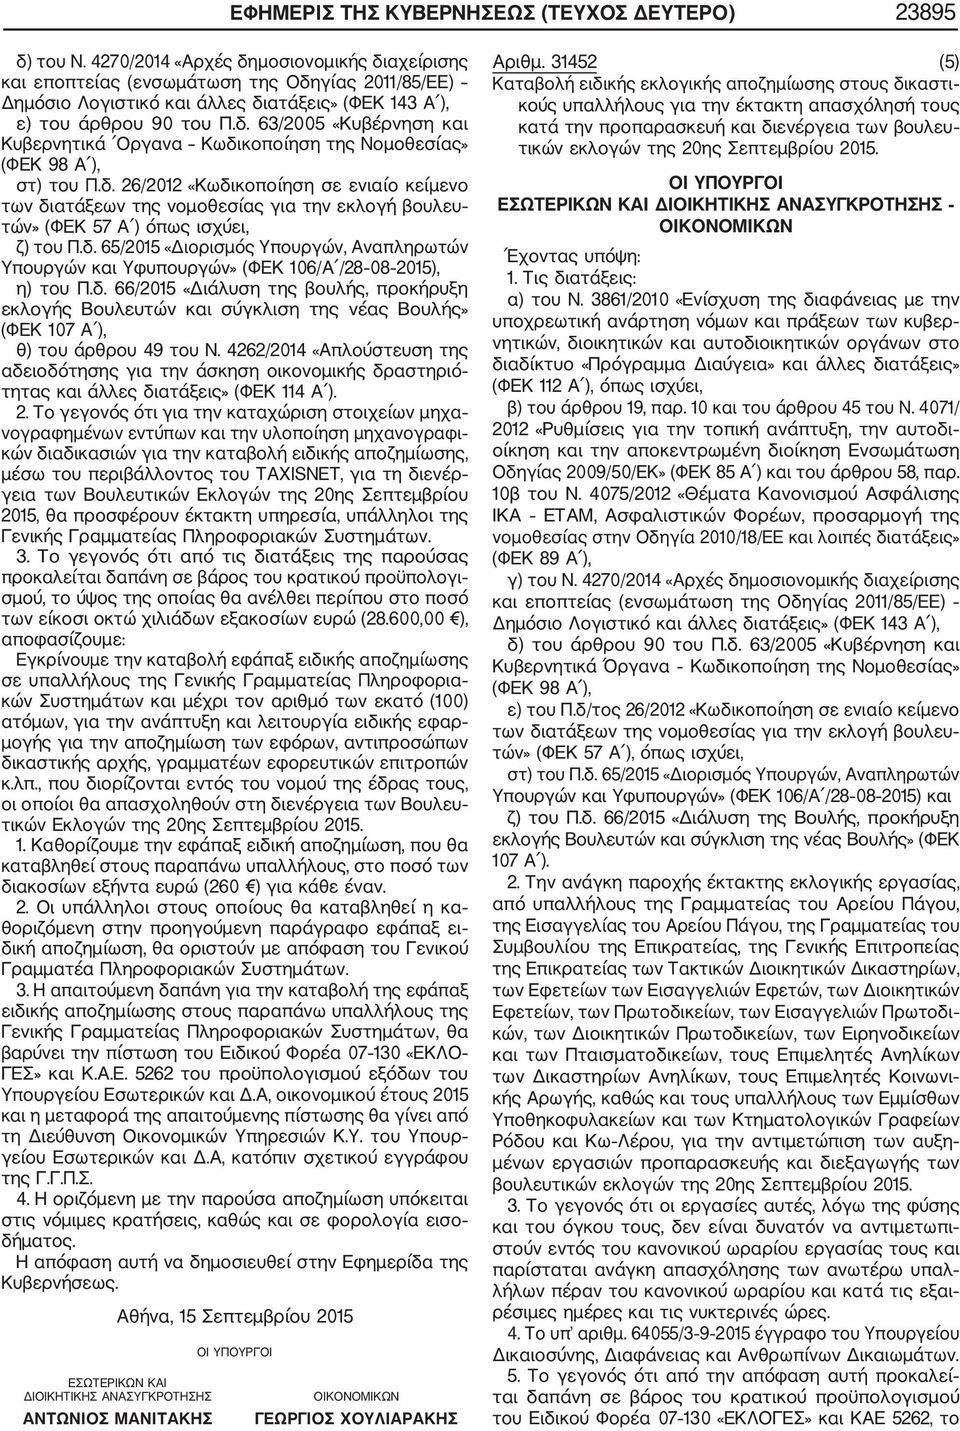 4262/2014 «Απλούστευση της αδειοδότησης για την άσκηση οικονομικής δραστηριό τητας και άλλες διατάξεις» (ΦΕΚ 114 Α ). 2.